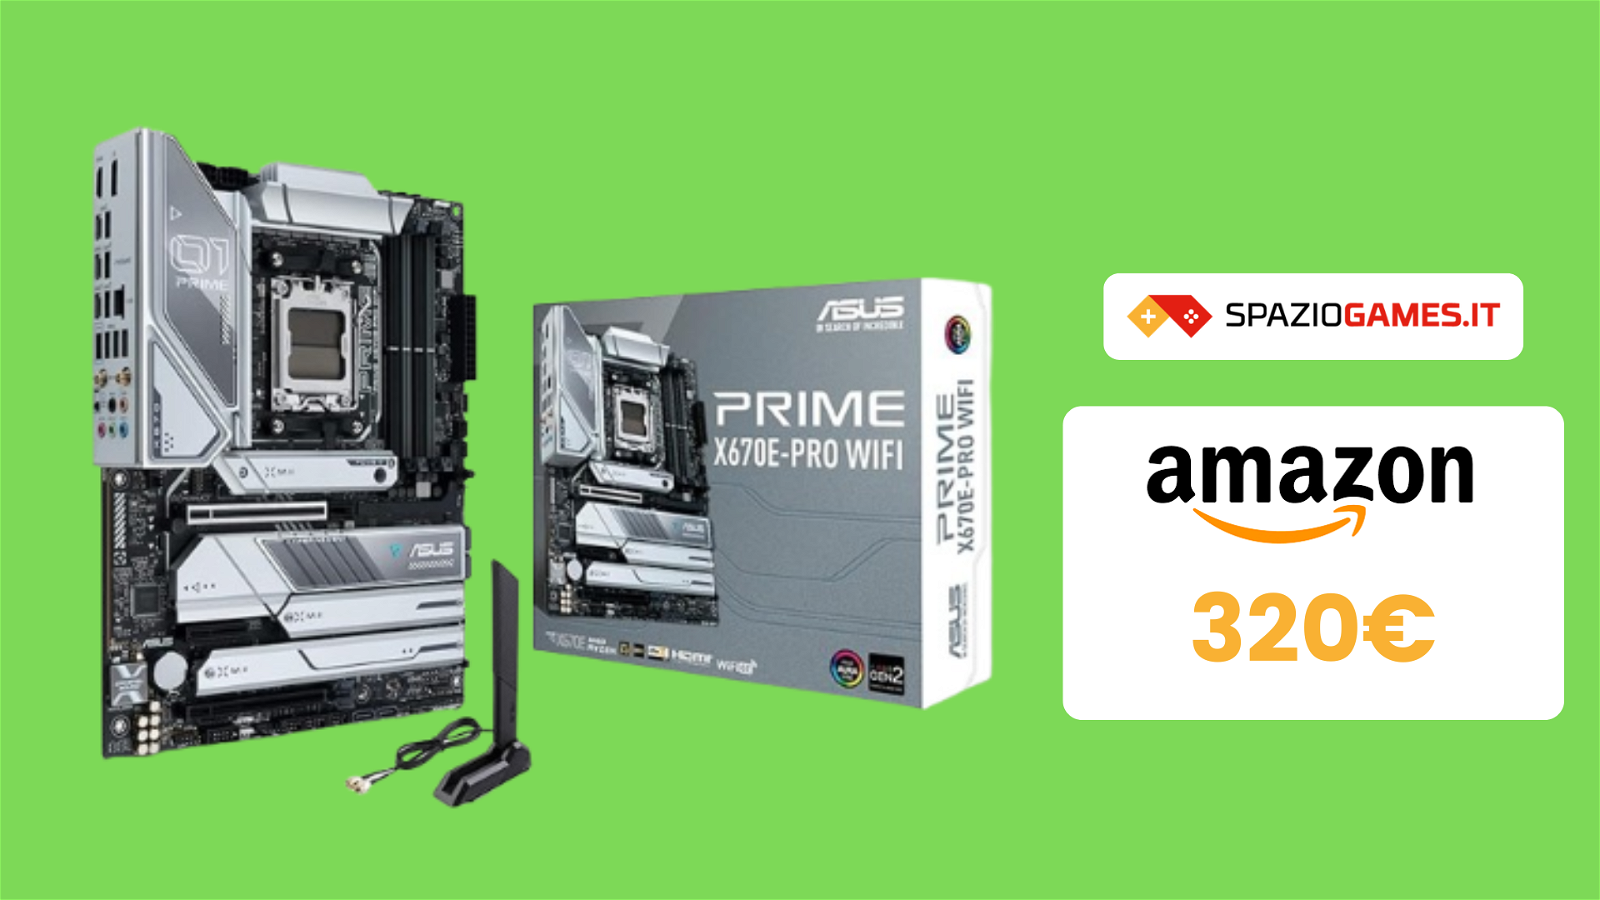 MINIMO STORICO per la scheda madre Asus Prime X670E-Pro!